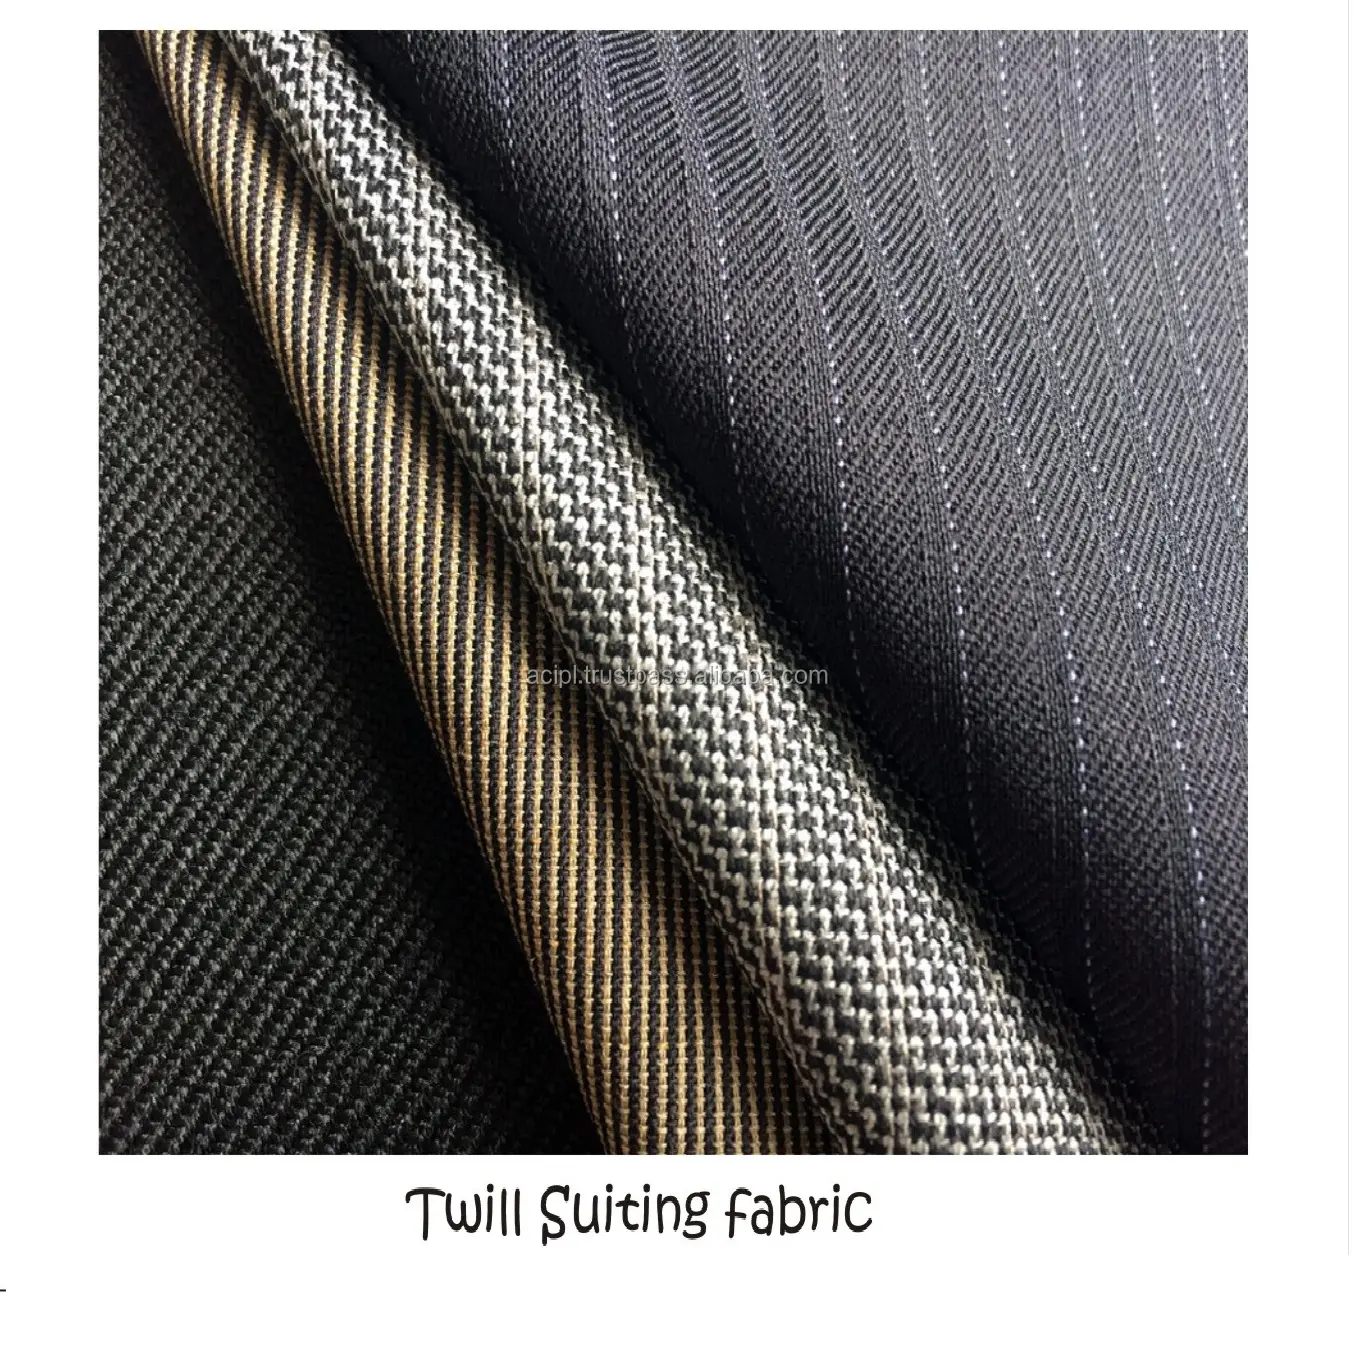 Vải denim tiêu chuẩn chất lượng cao biểu thị một loại vải cotton chắc chắn được sử dụng cho vải cotton polyester trong nguyên liệu dệt